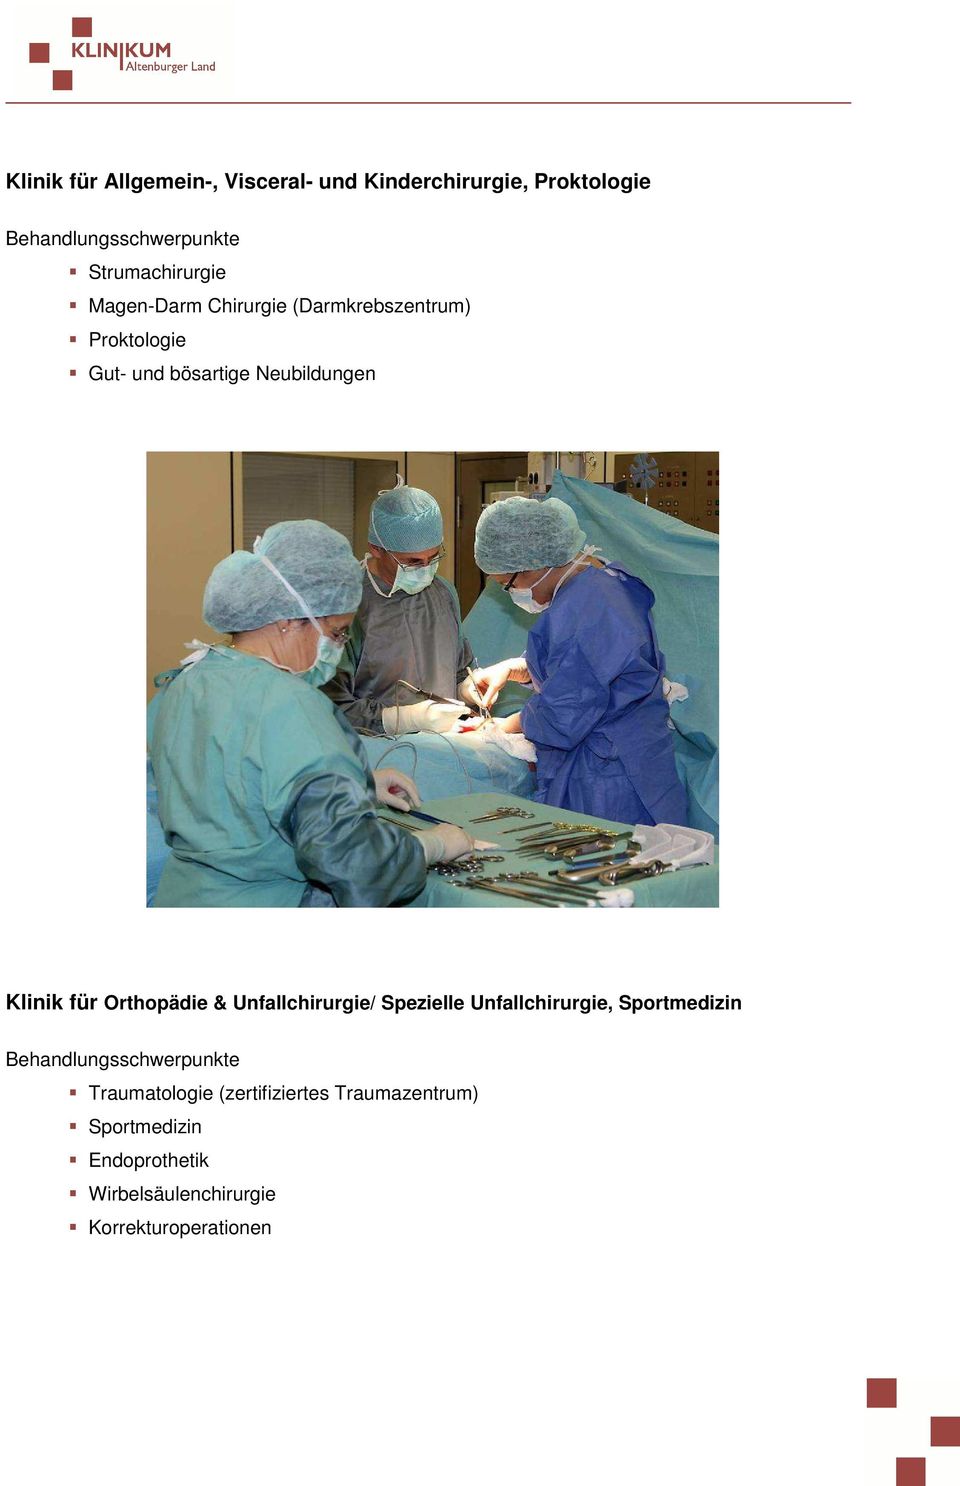 Klinik für Orthopädie & Unfallchirurgie/ Spezielle Unfallchirurgie, Sportmedizin